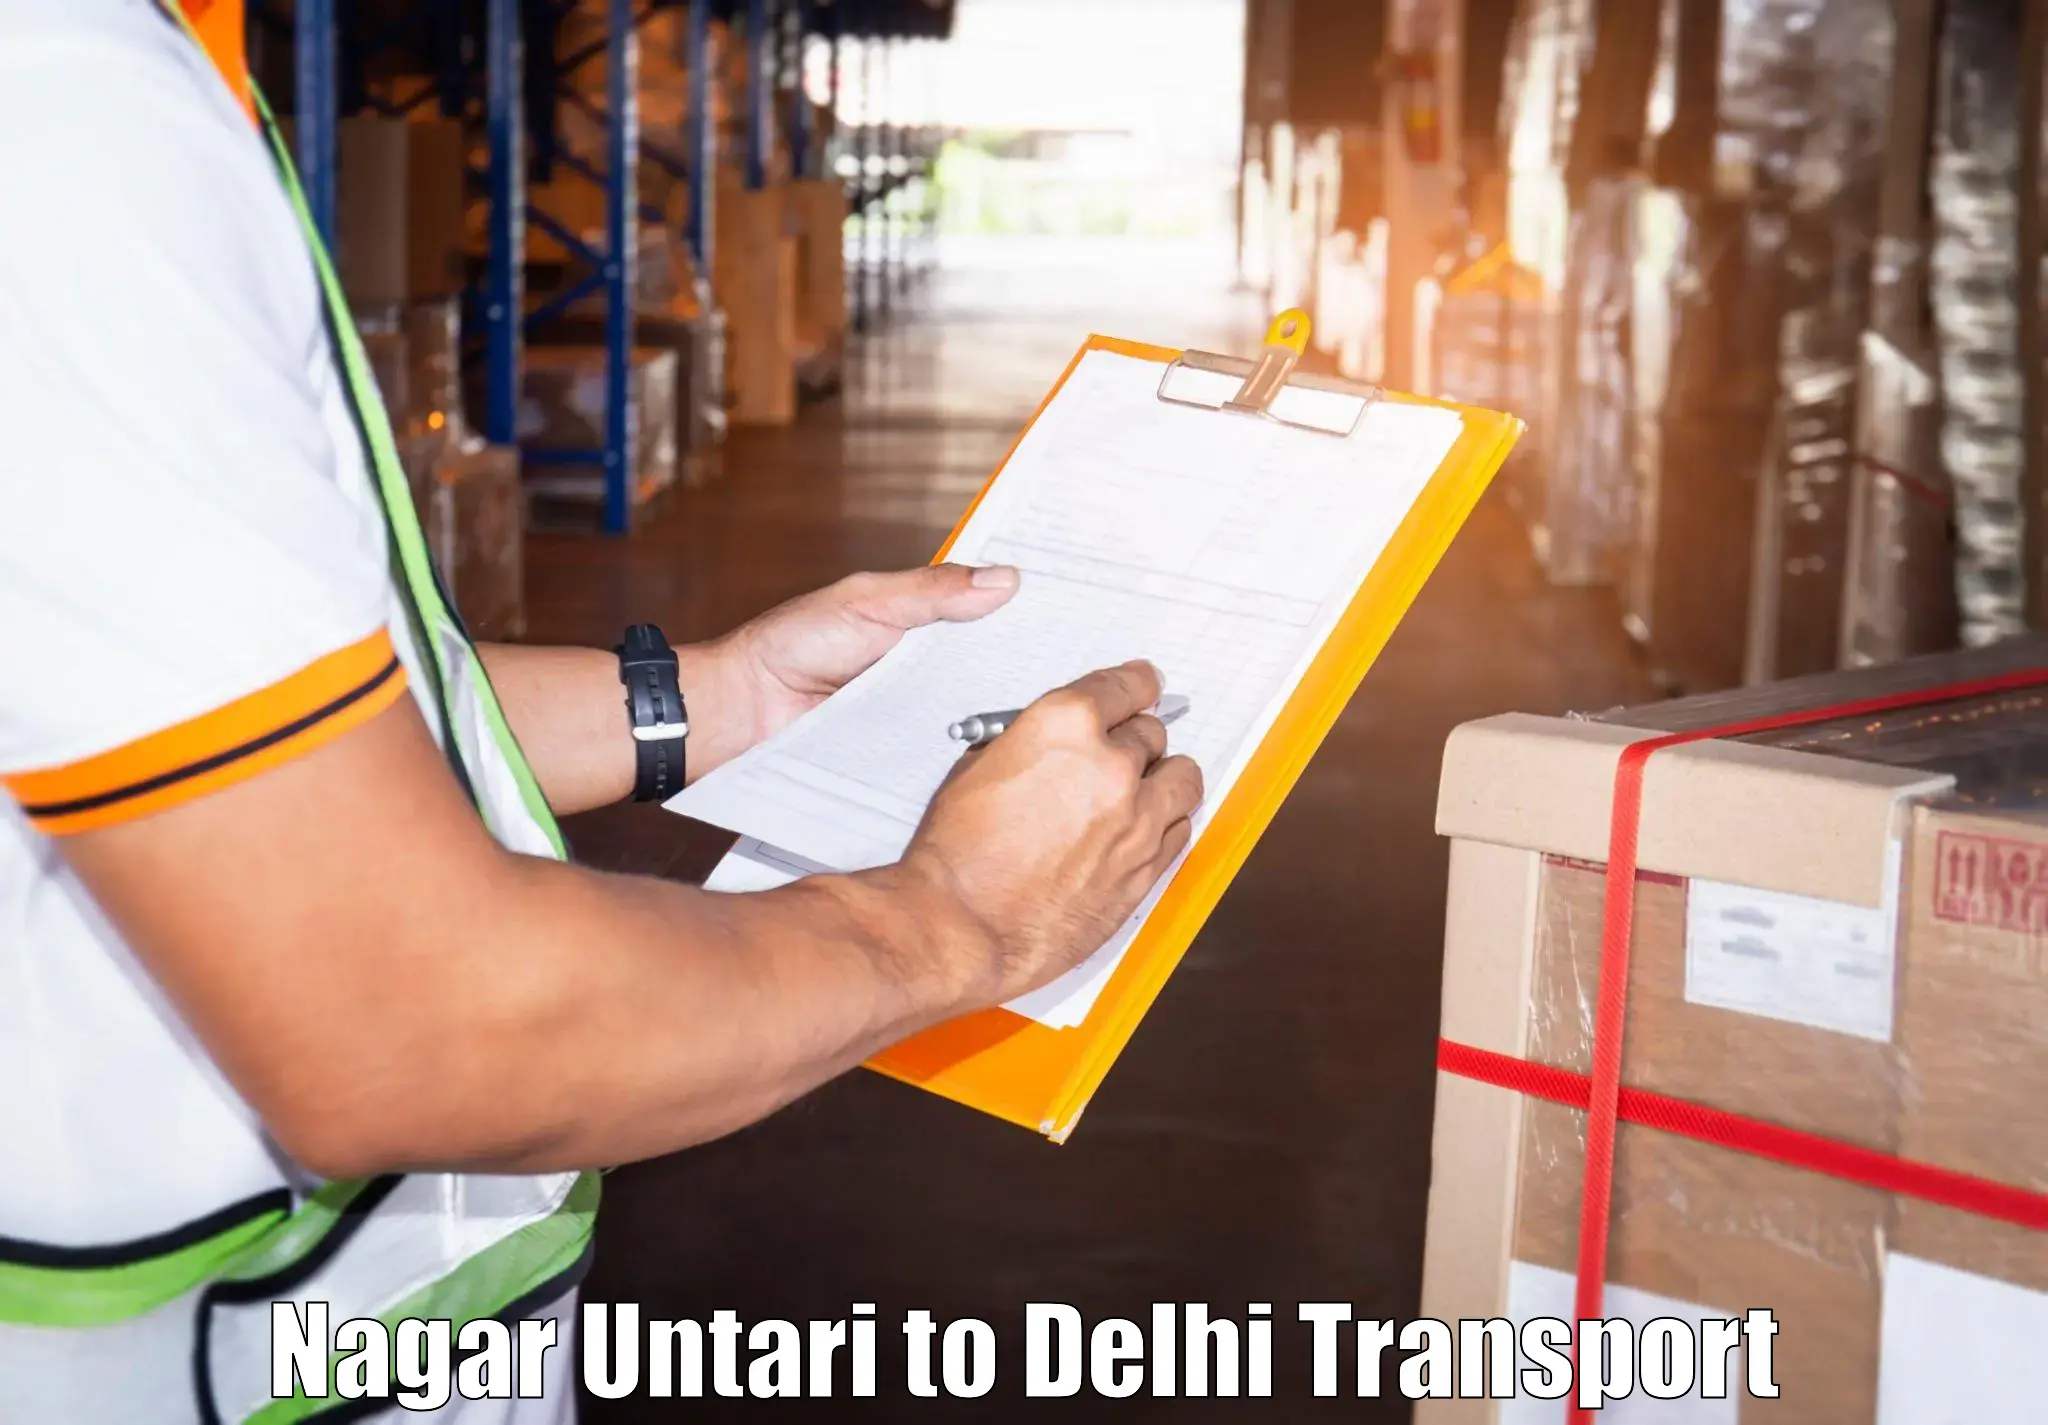 Transportation services Nagar Untari to Delhi